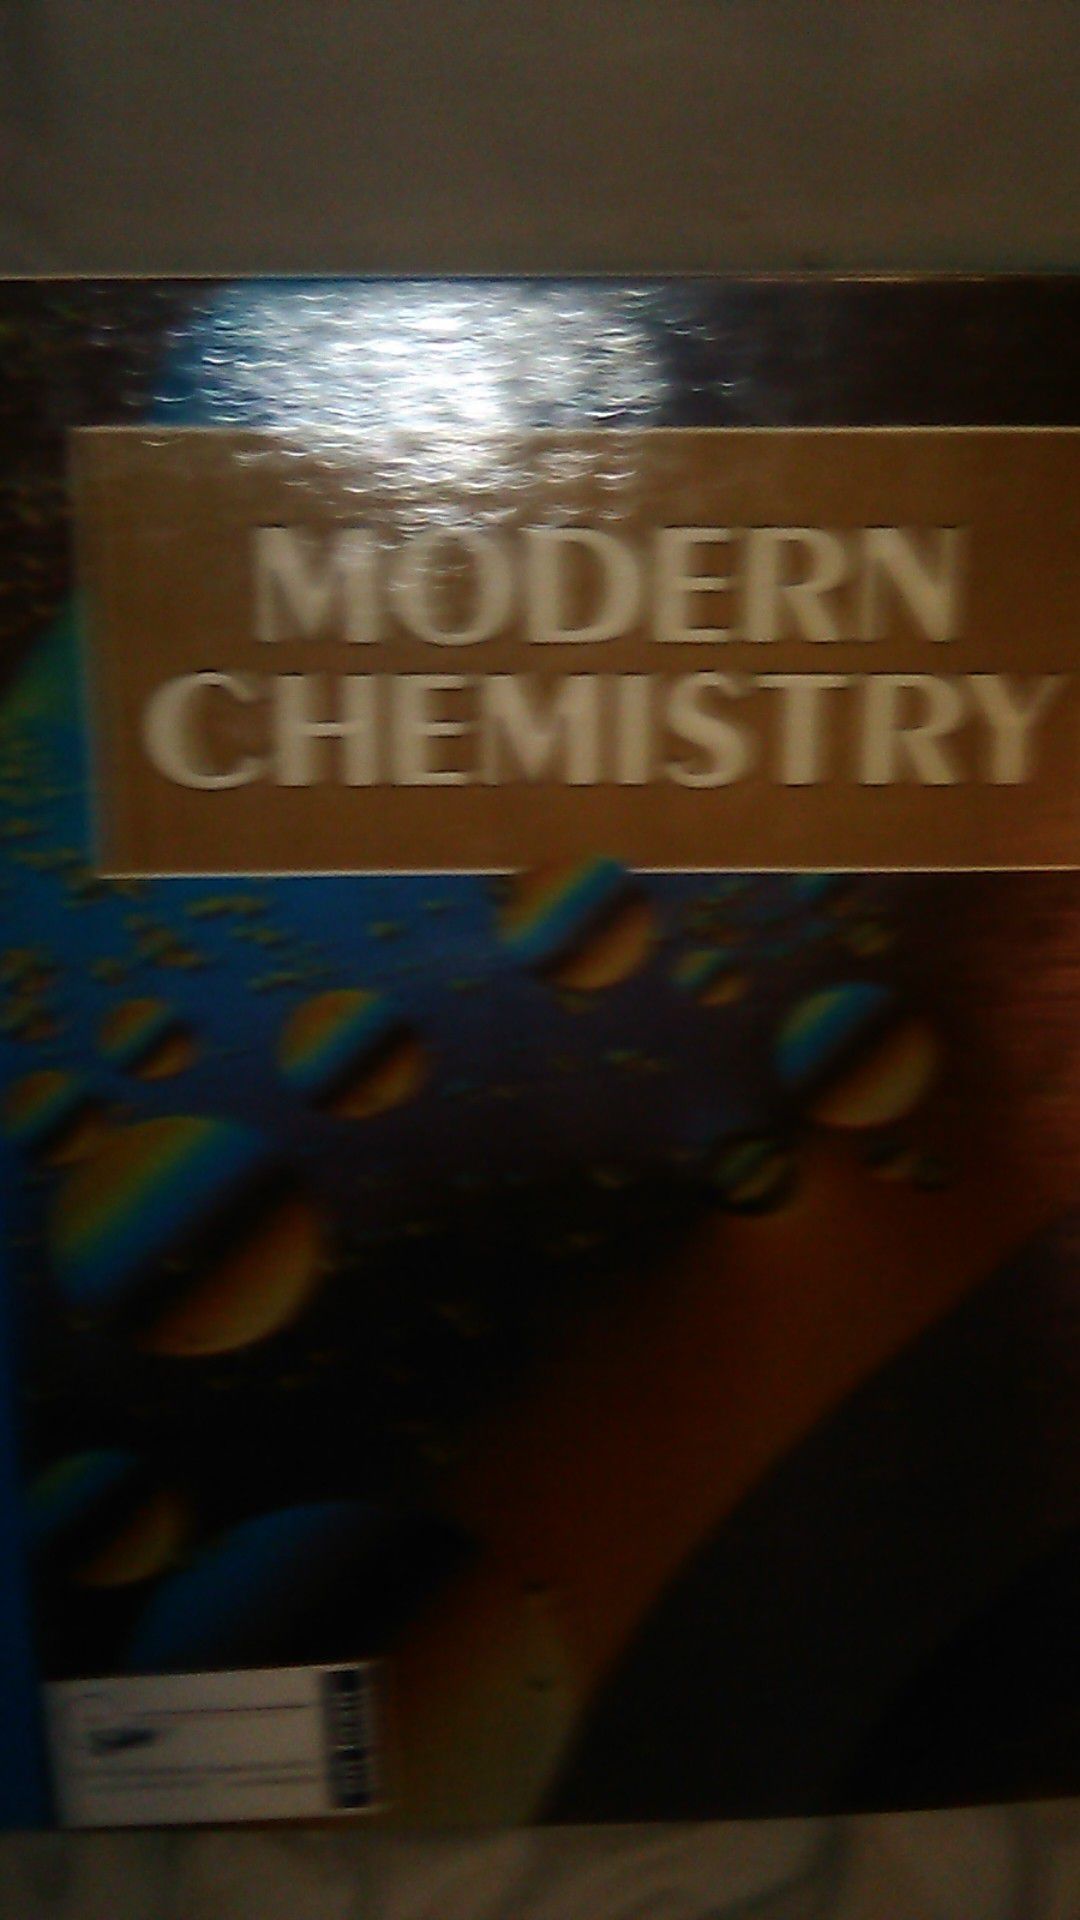 HOLT, RINEHART AND WINSTON MODERN CHEMISTRY BOOK